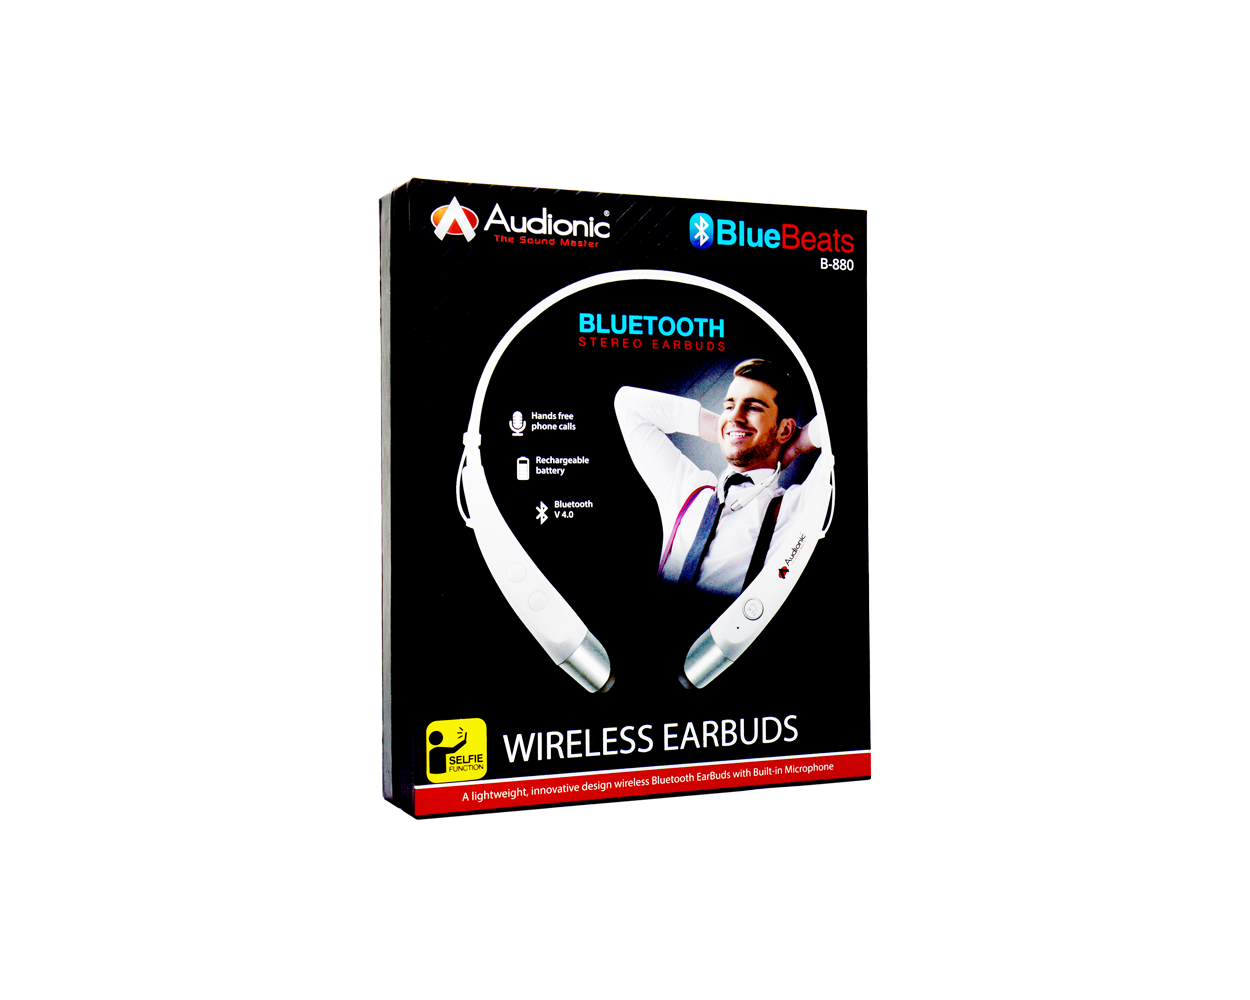 audionic blue beats b880